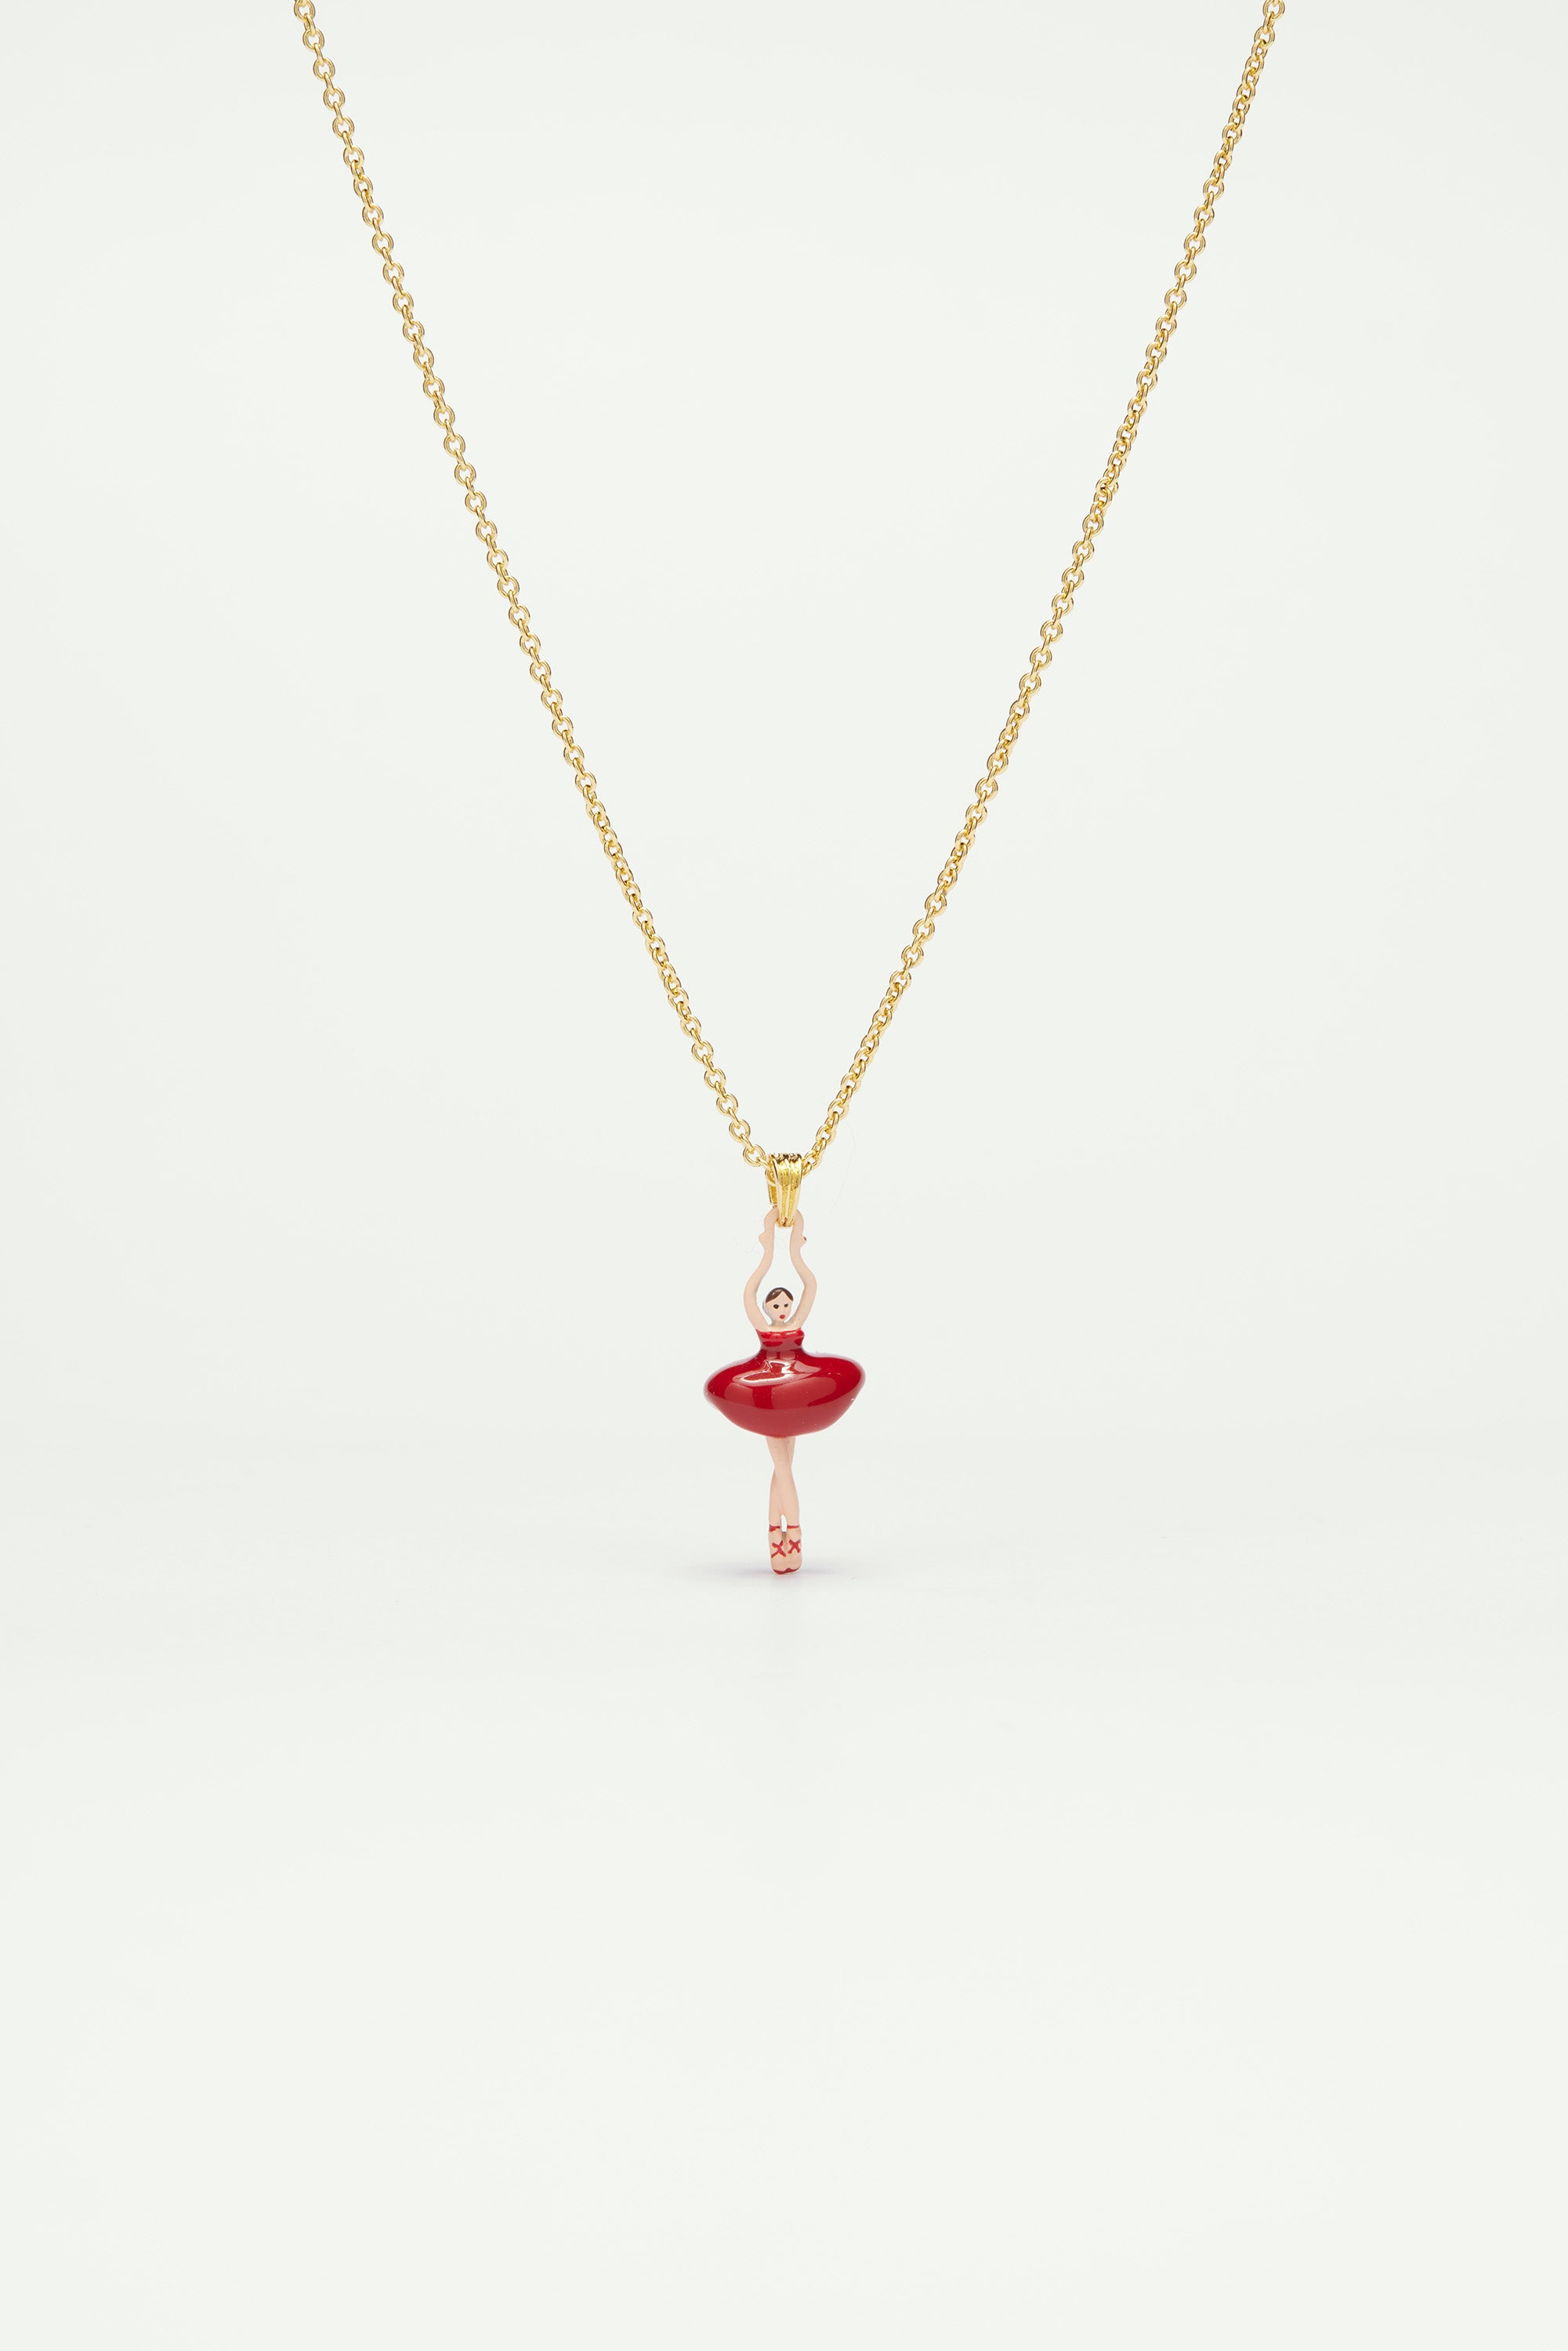 Necklace featuring mini ballerina in a red tutu